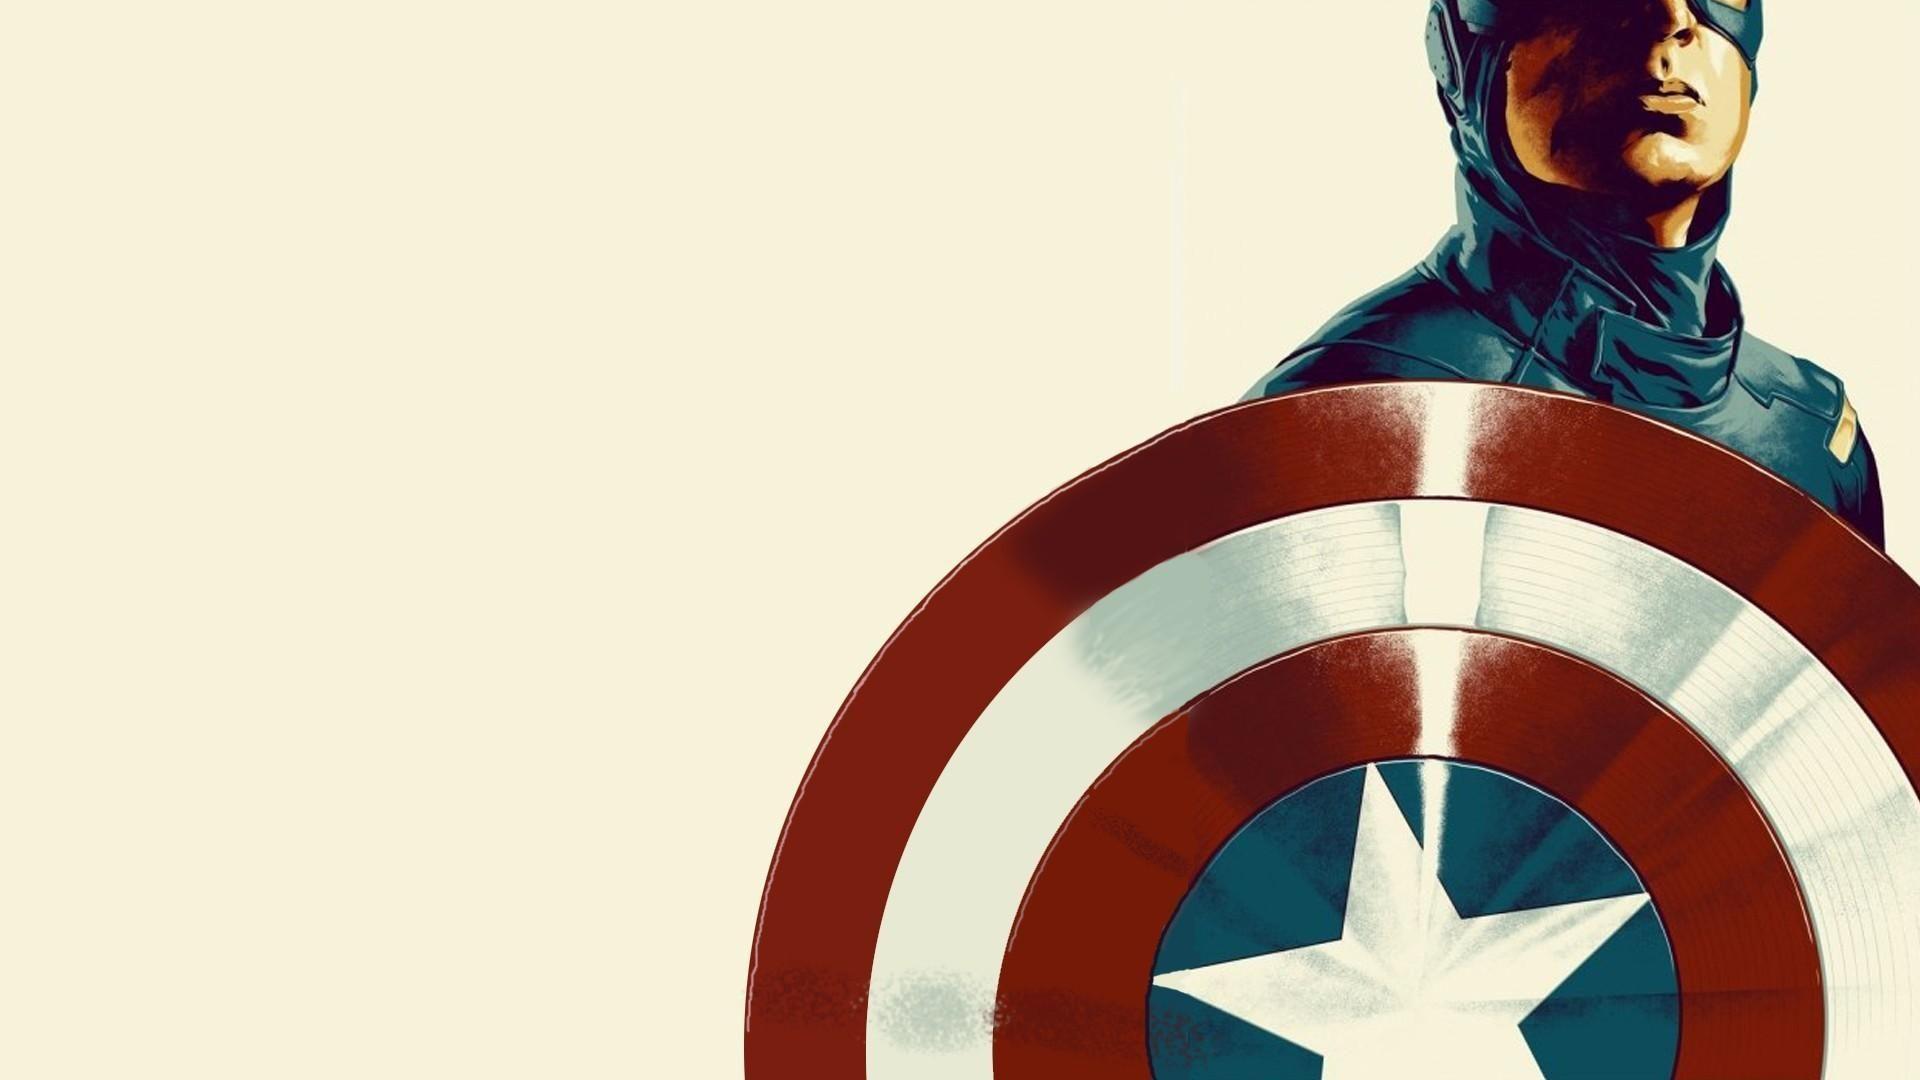 1920x1080 Captain America the Avengers tác phẩm nghệ thuật truyện tranh nền trắng